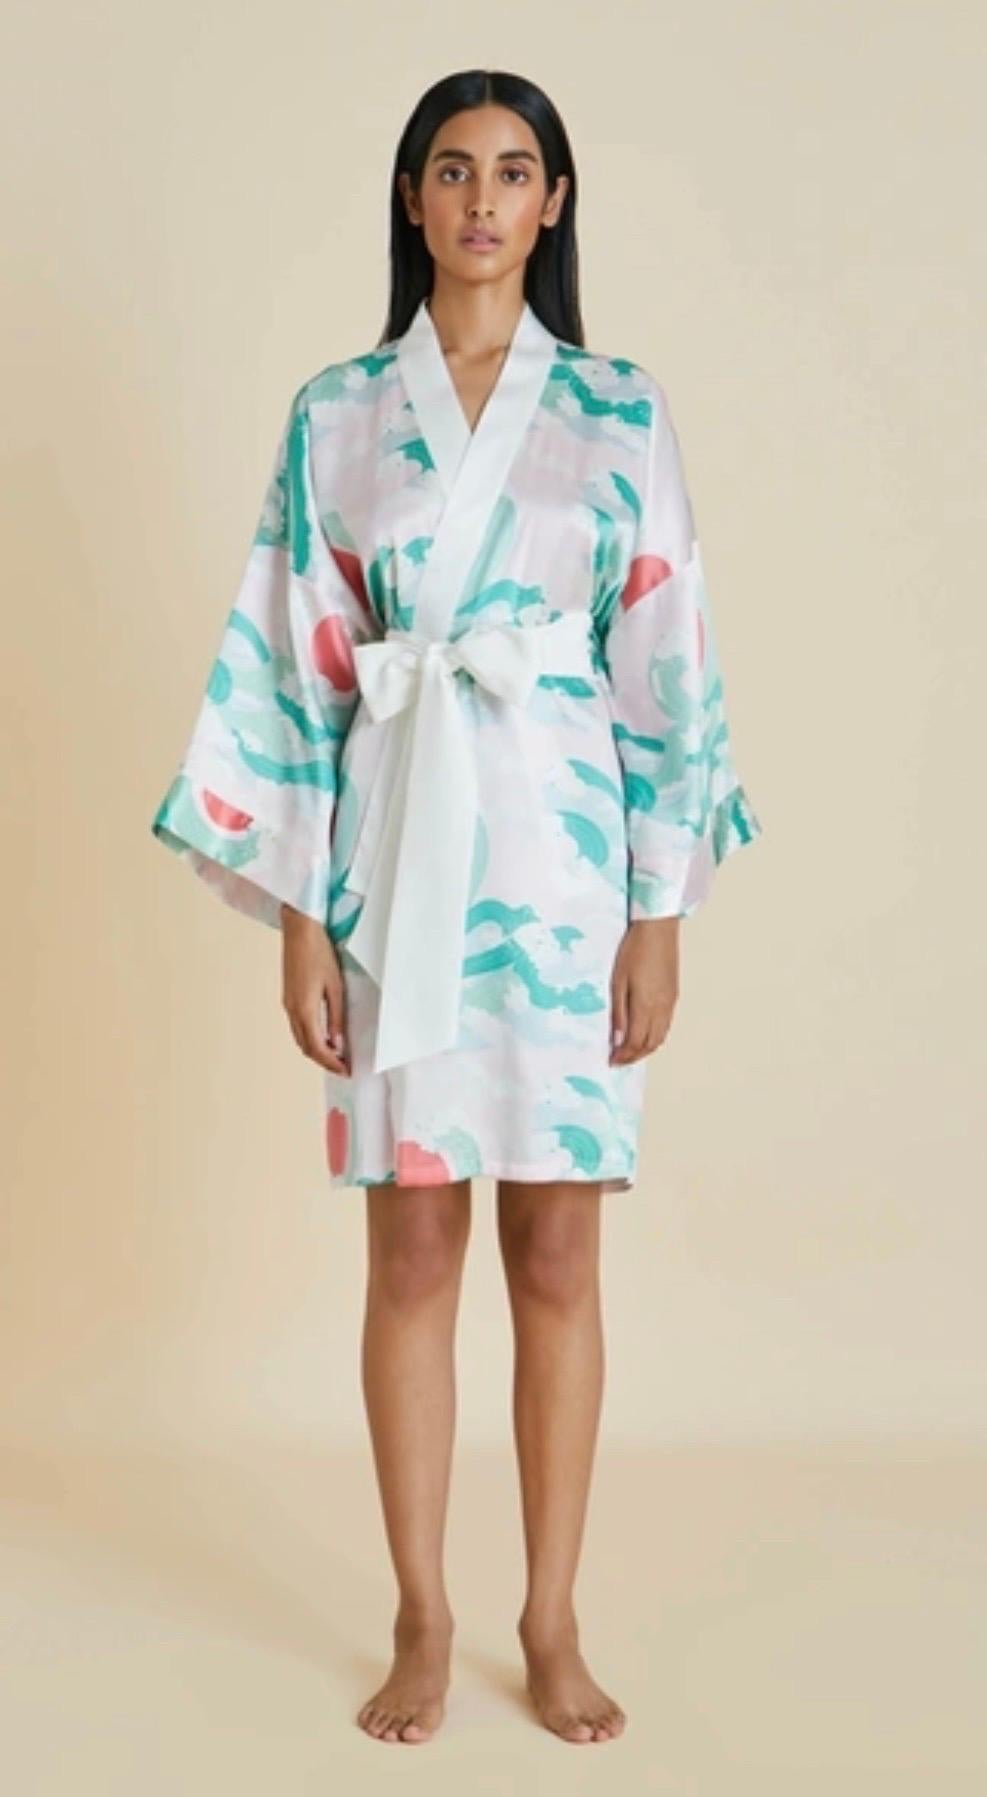 Die Robe von Olivia von Halle ist aus weichem Seidensatin in einer von Kimono inspirierten Silhouette gefertigt. Es ist ganzflächig mit einem japanisch inspirierten Motiv in Rosa-, Korallen- und Meerschaumgrüntönen bedruckt. Es hat weite Ärmel und